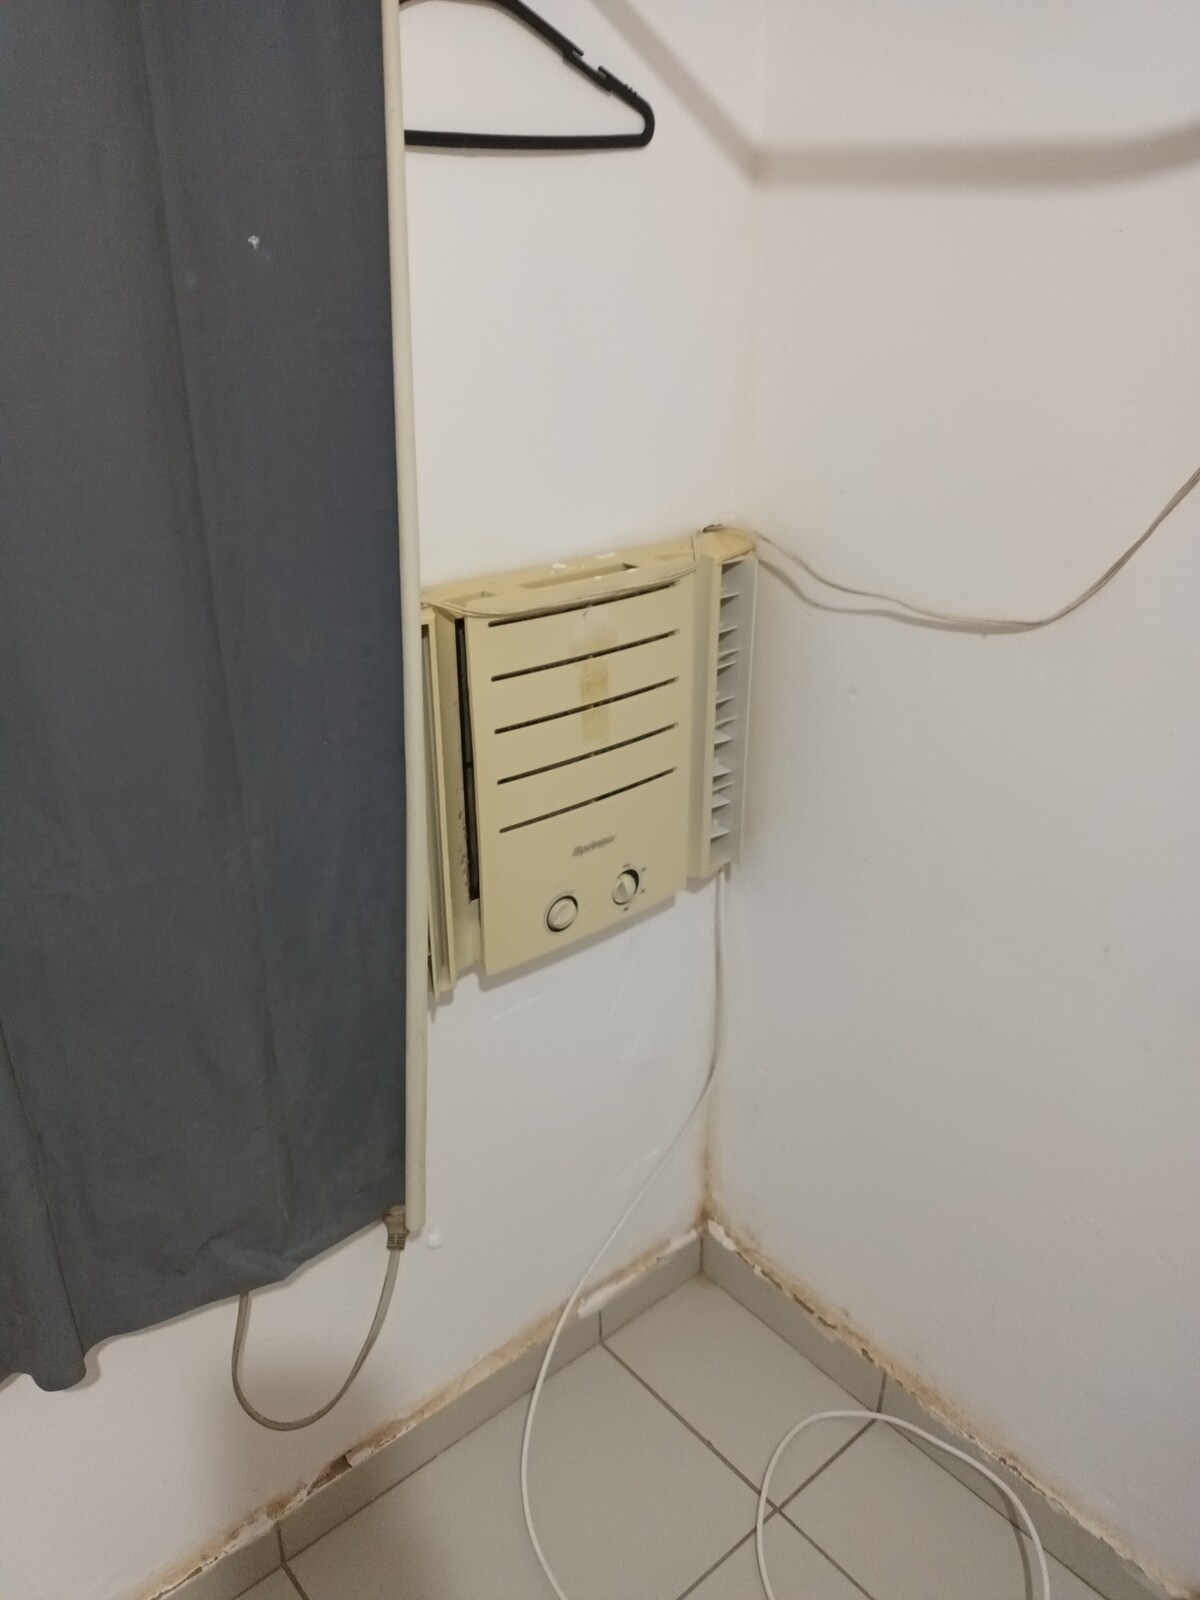 Quarto 06
com ar condicionado
banheiro no corredor